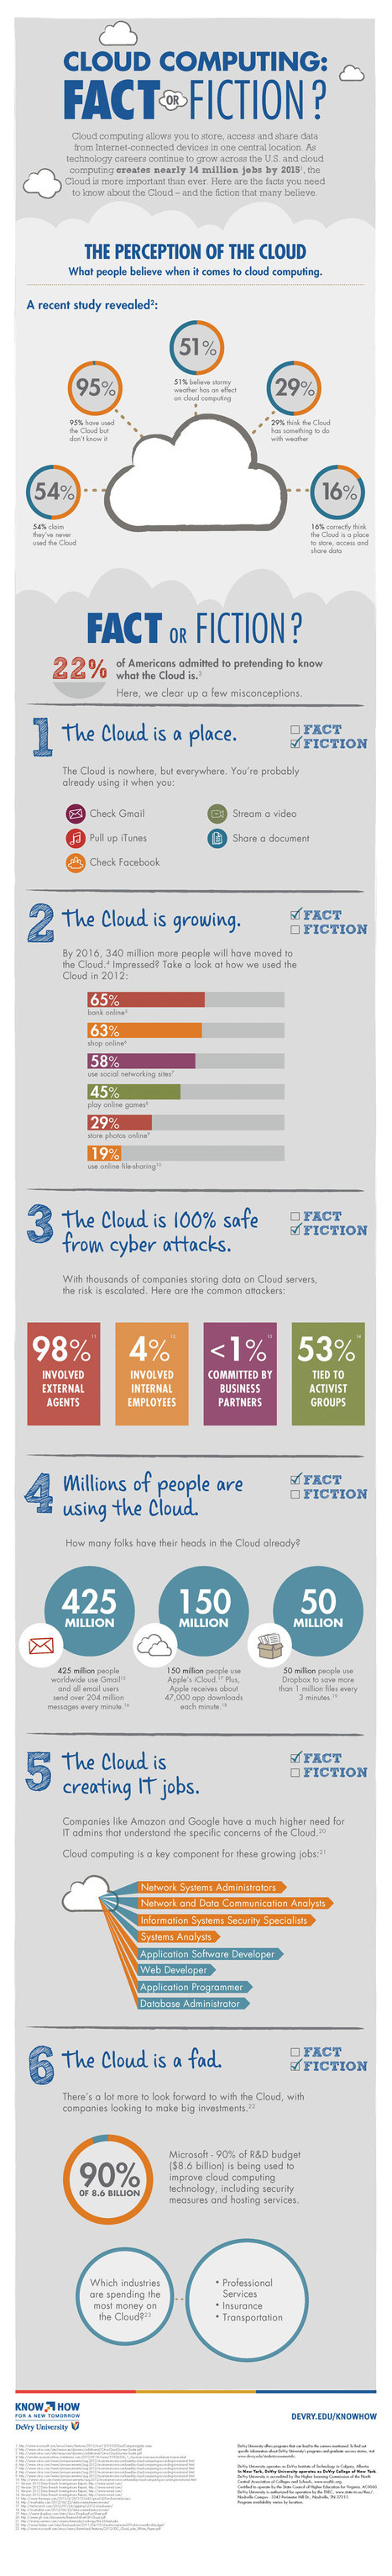 Is Cloud Computing a Fact or Fiction? – infographic | Sociologie du numérique et Humanité technologique | Scoop.it